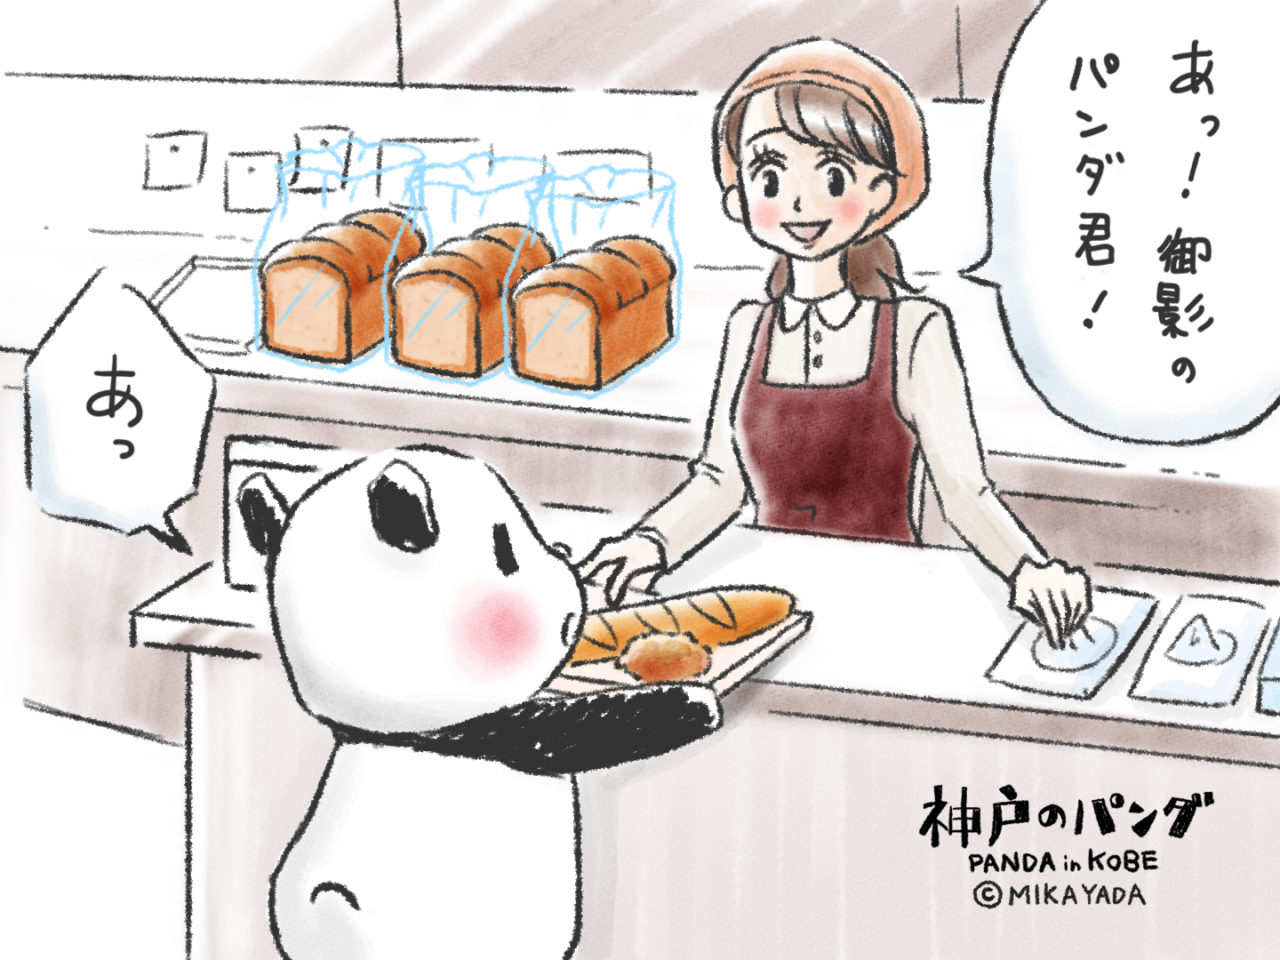 神戸のパンダ、パンを買う